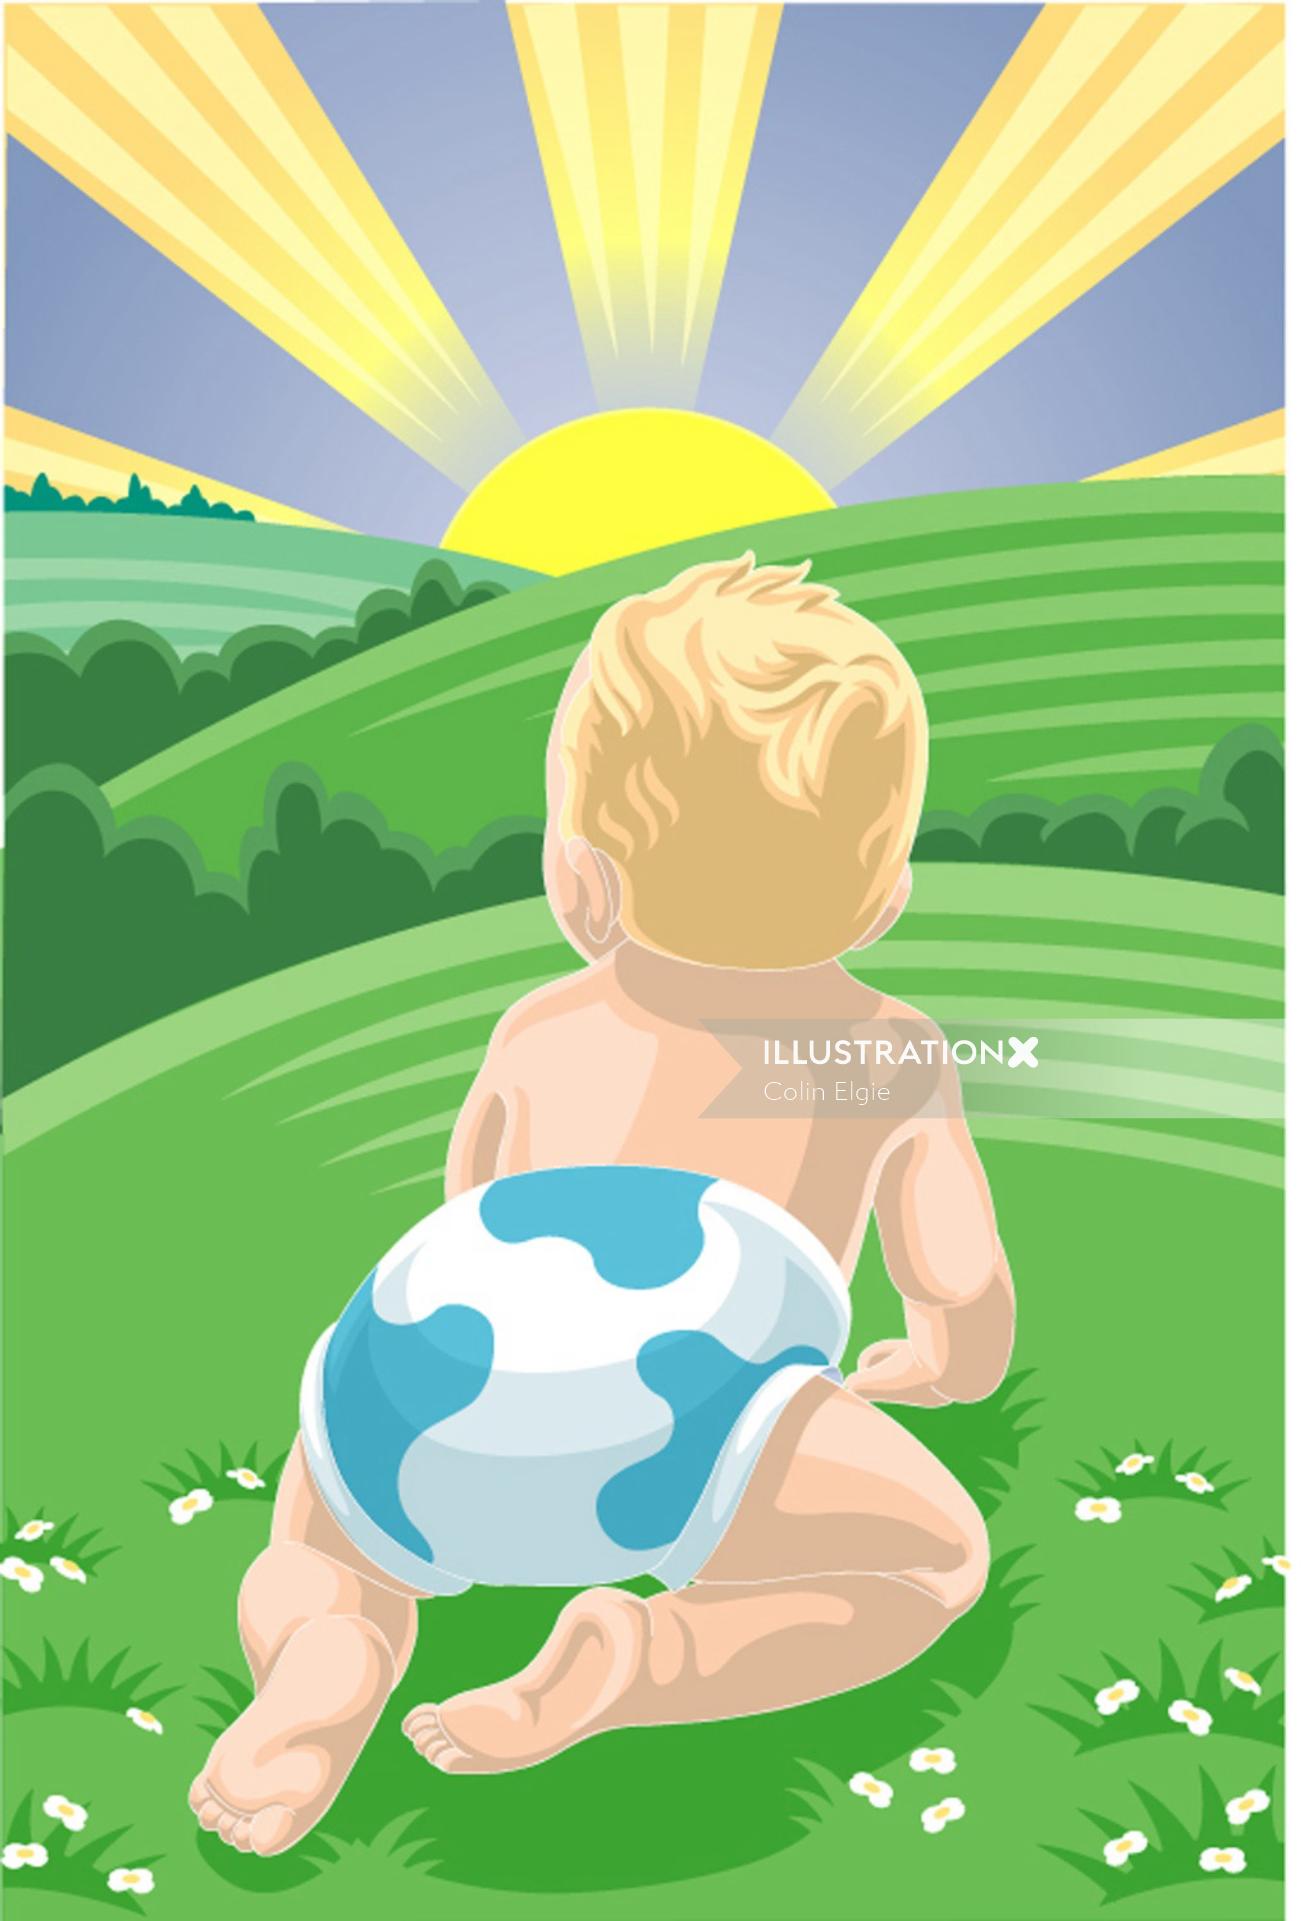 Una ilustración de pañales para bebés